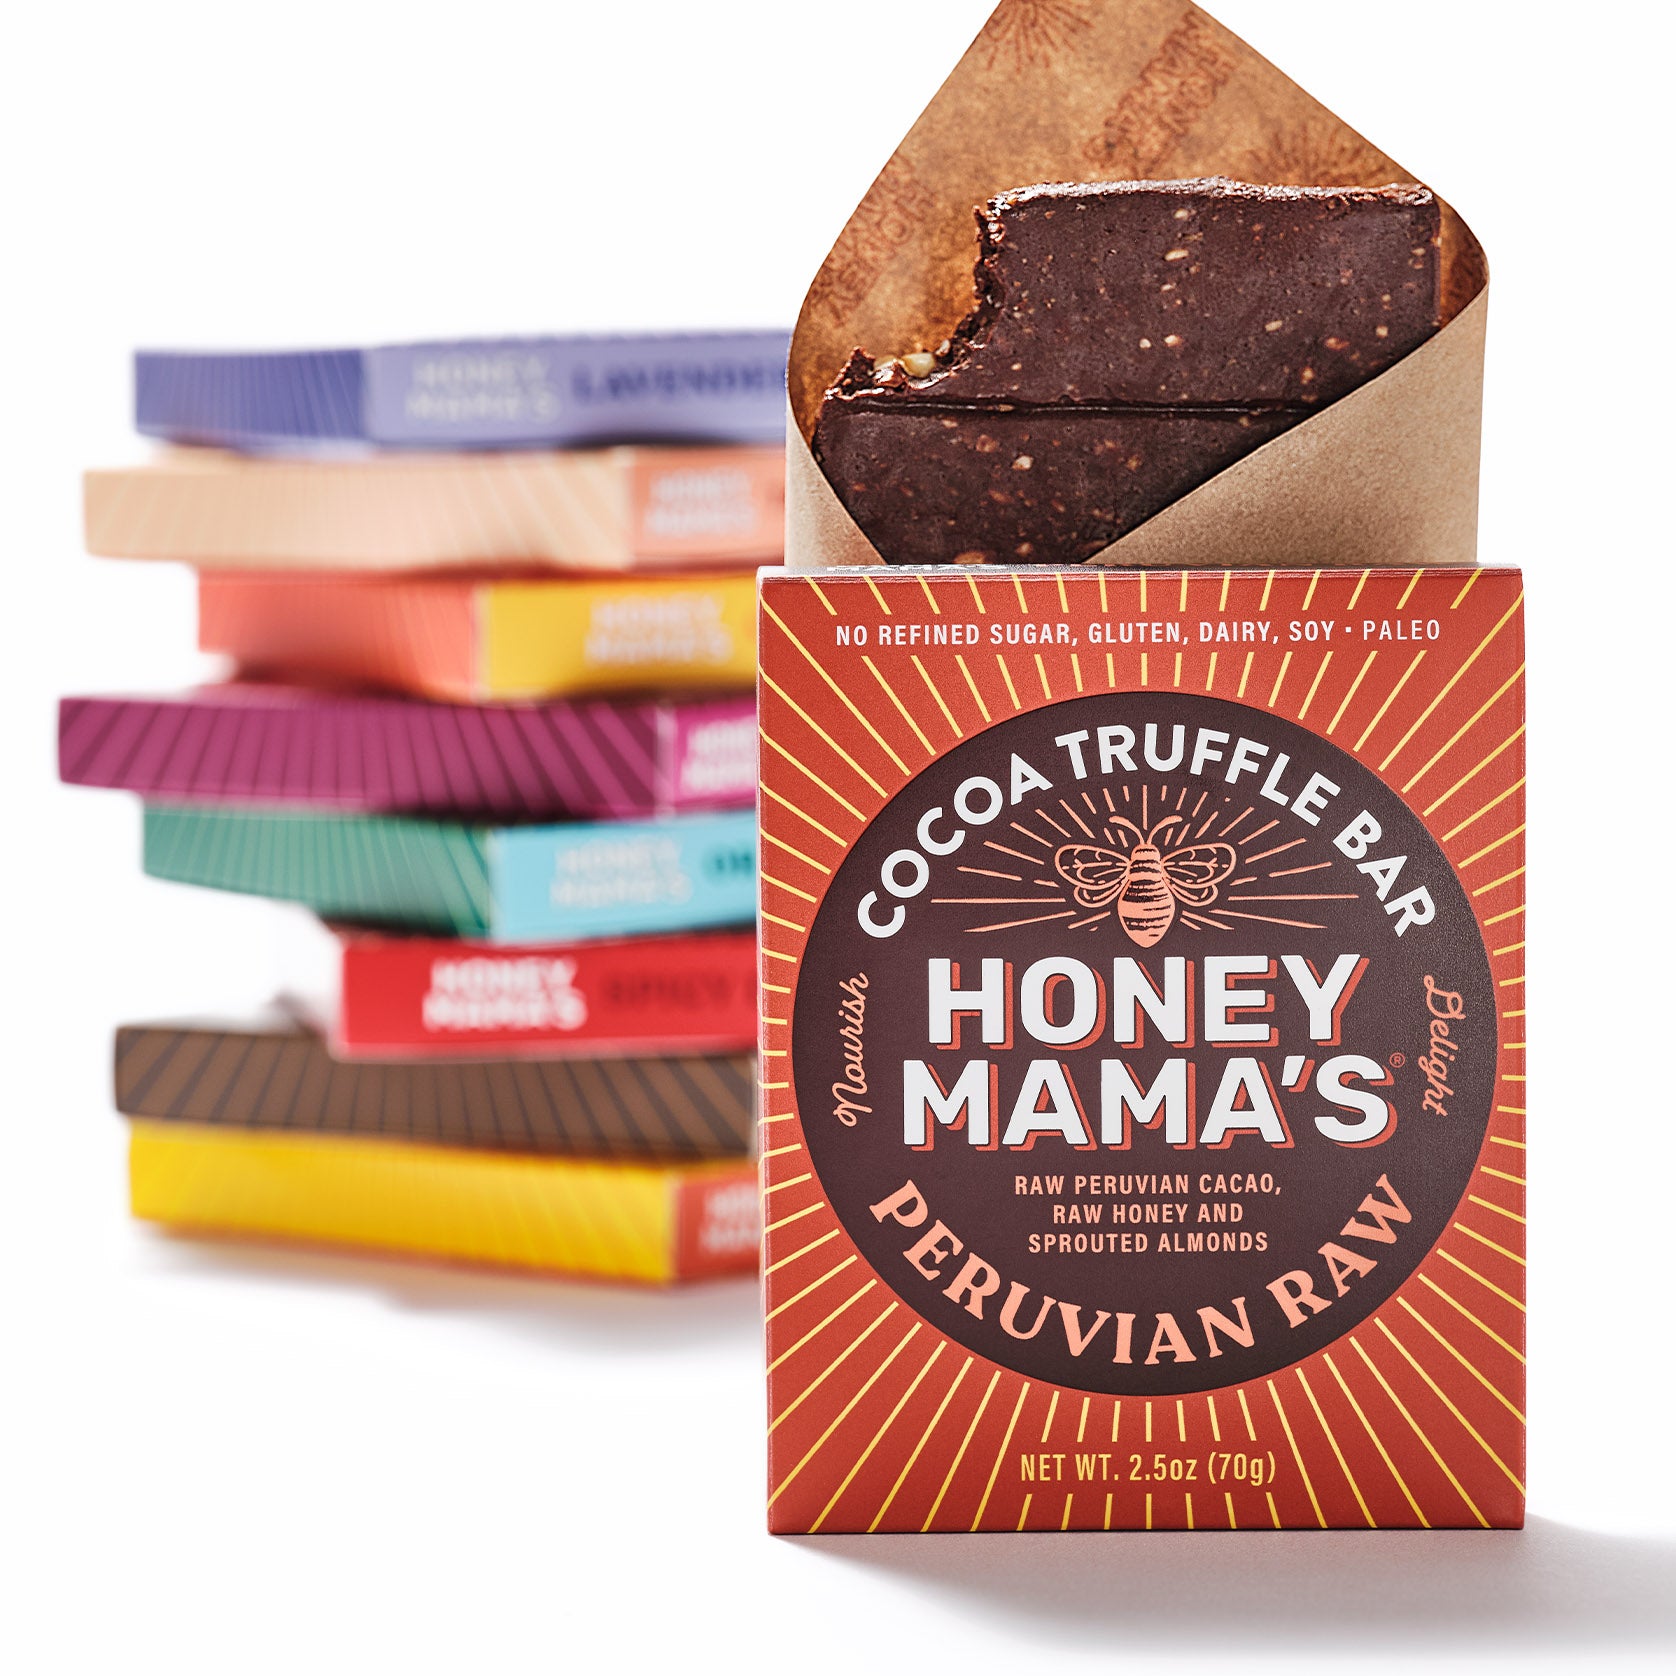 Honey Mama's Single-Serve Cocoa Truffle Bar Reviews